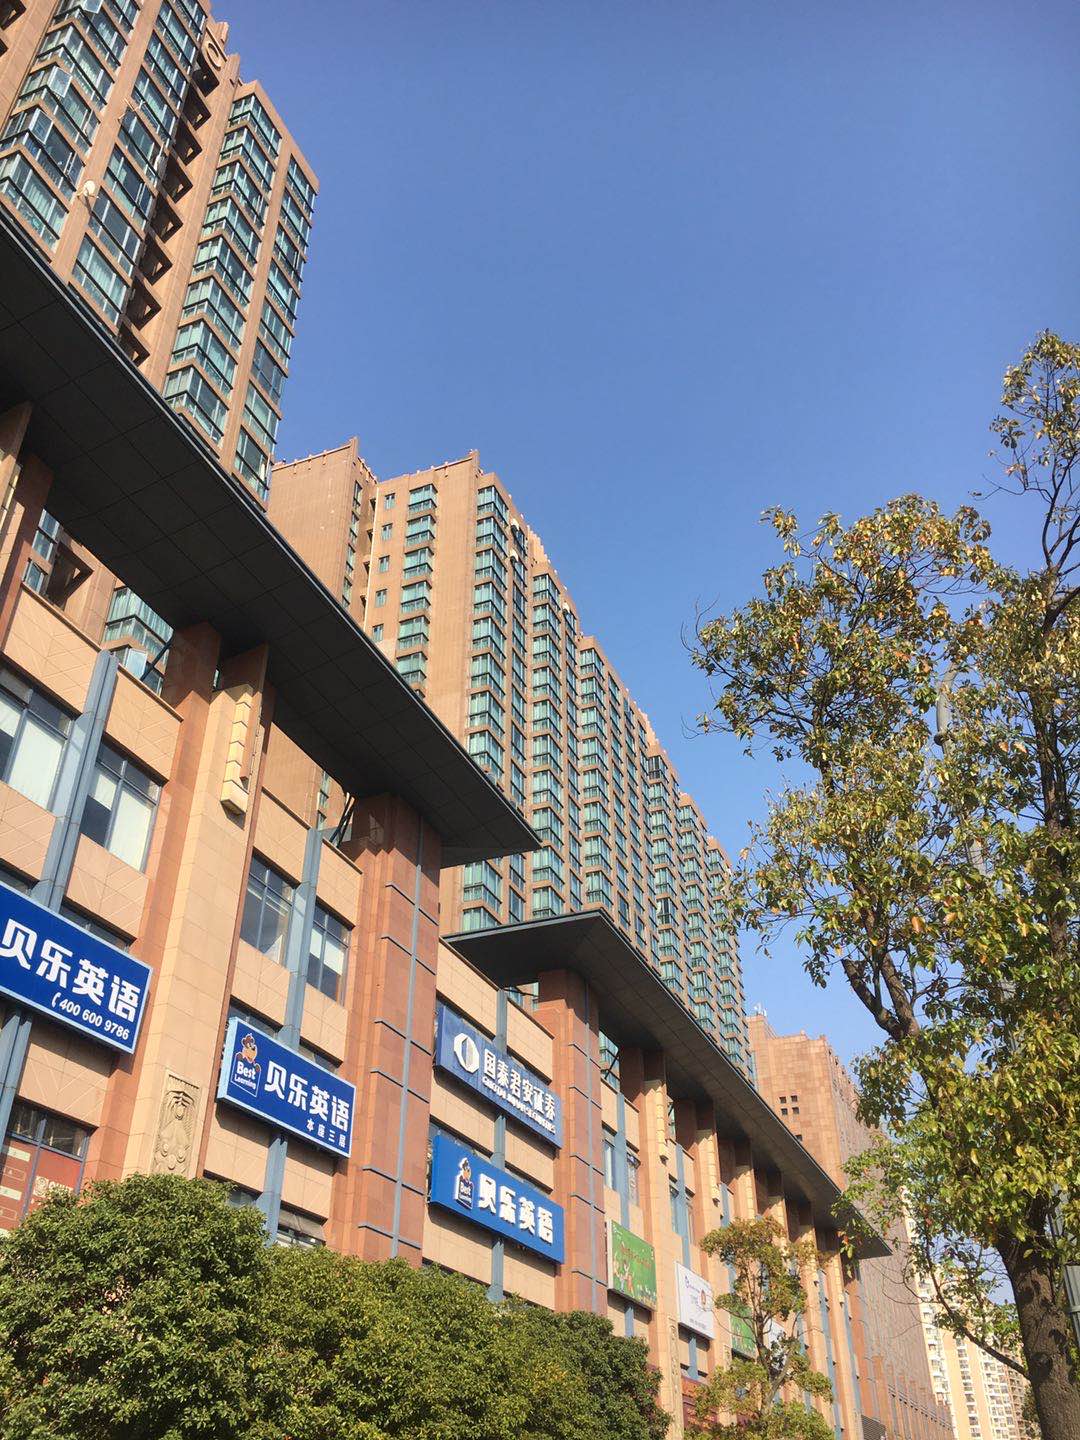 【上海市衡辰公寓楼盘】房价,户型,开盘时间详情 实景图